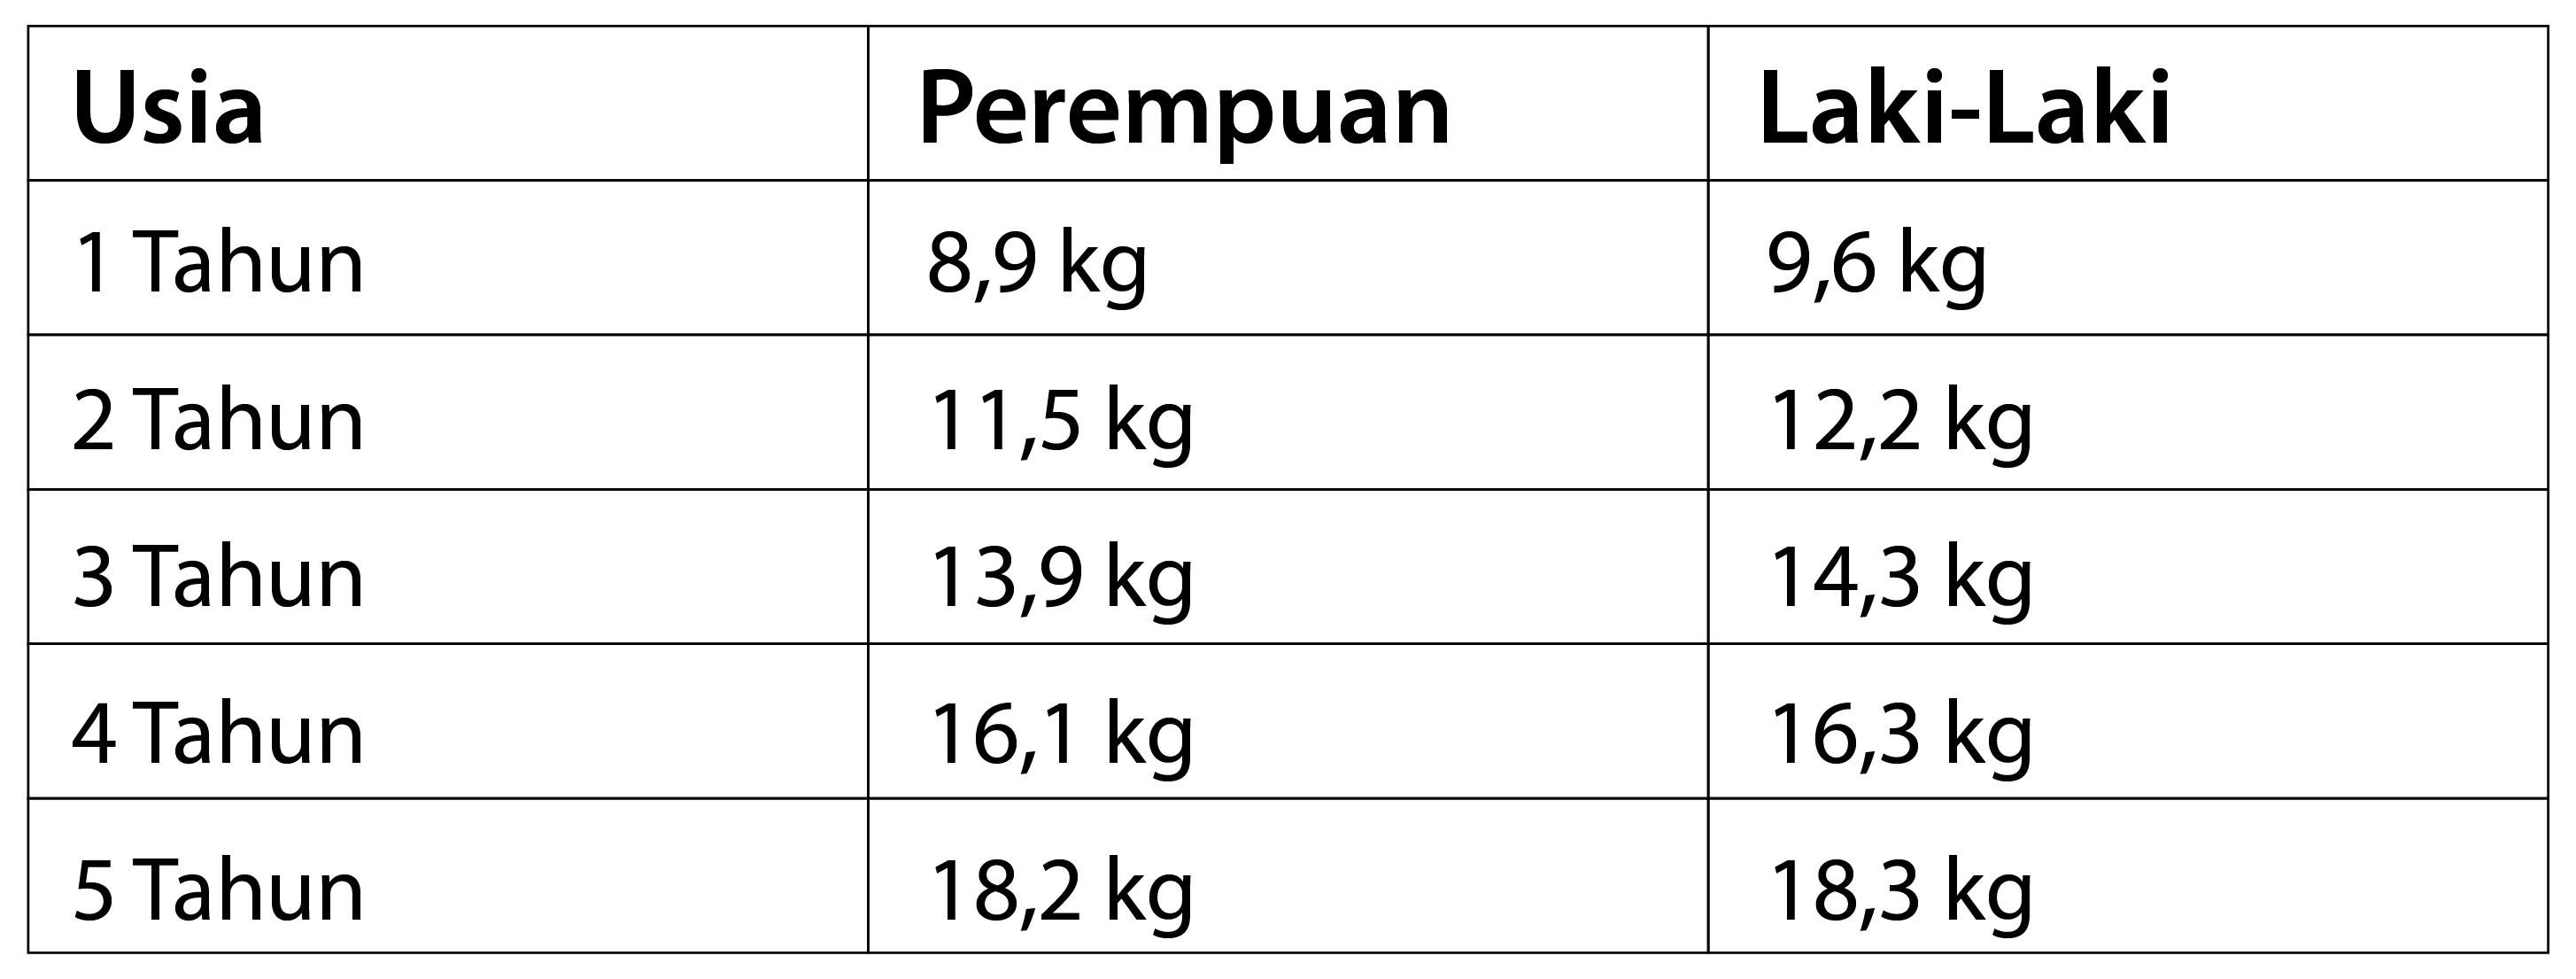 Tabel berat badan anak usia 1-5 tahun